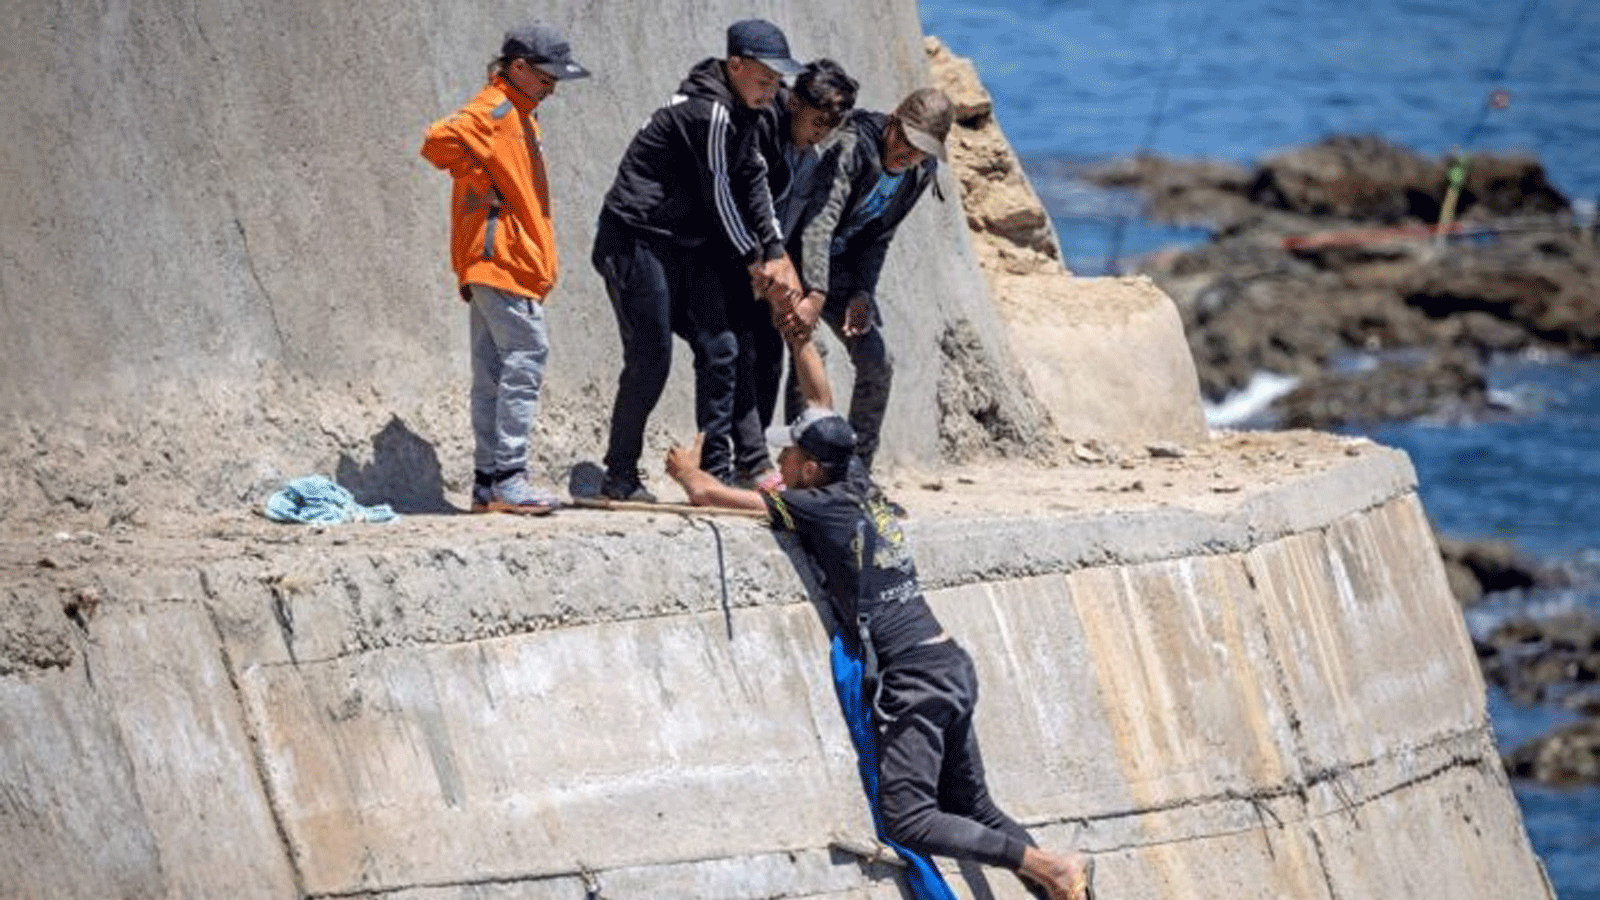 مهاجرون يتسلقون جدارًا بحريًا في مدينة الفنيدق الشمالية بعد محاولتهم عبور الحدود من المغرب إلى سبتة، جيب إسبانيا في شمال أفريقيا. في 19أيار\ مايو 2021.